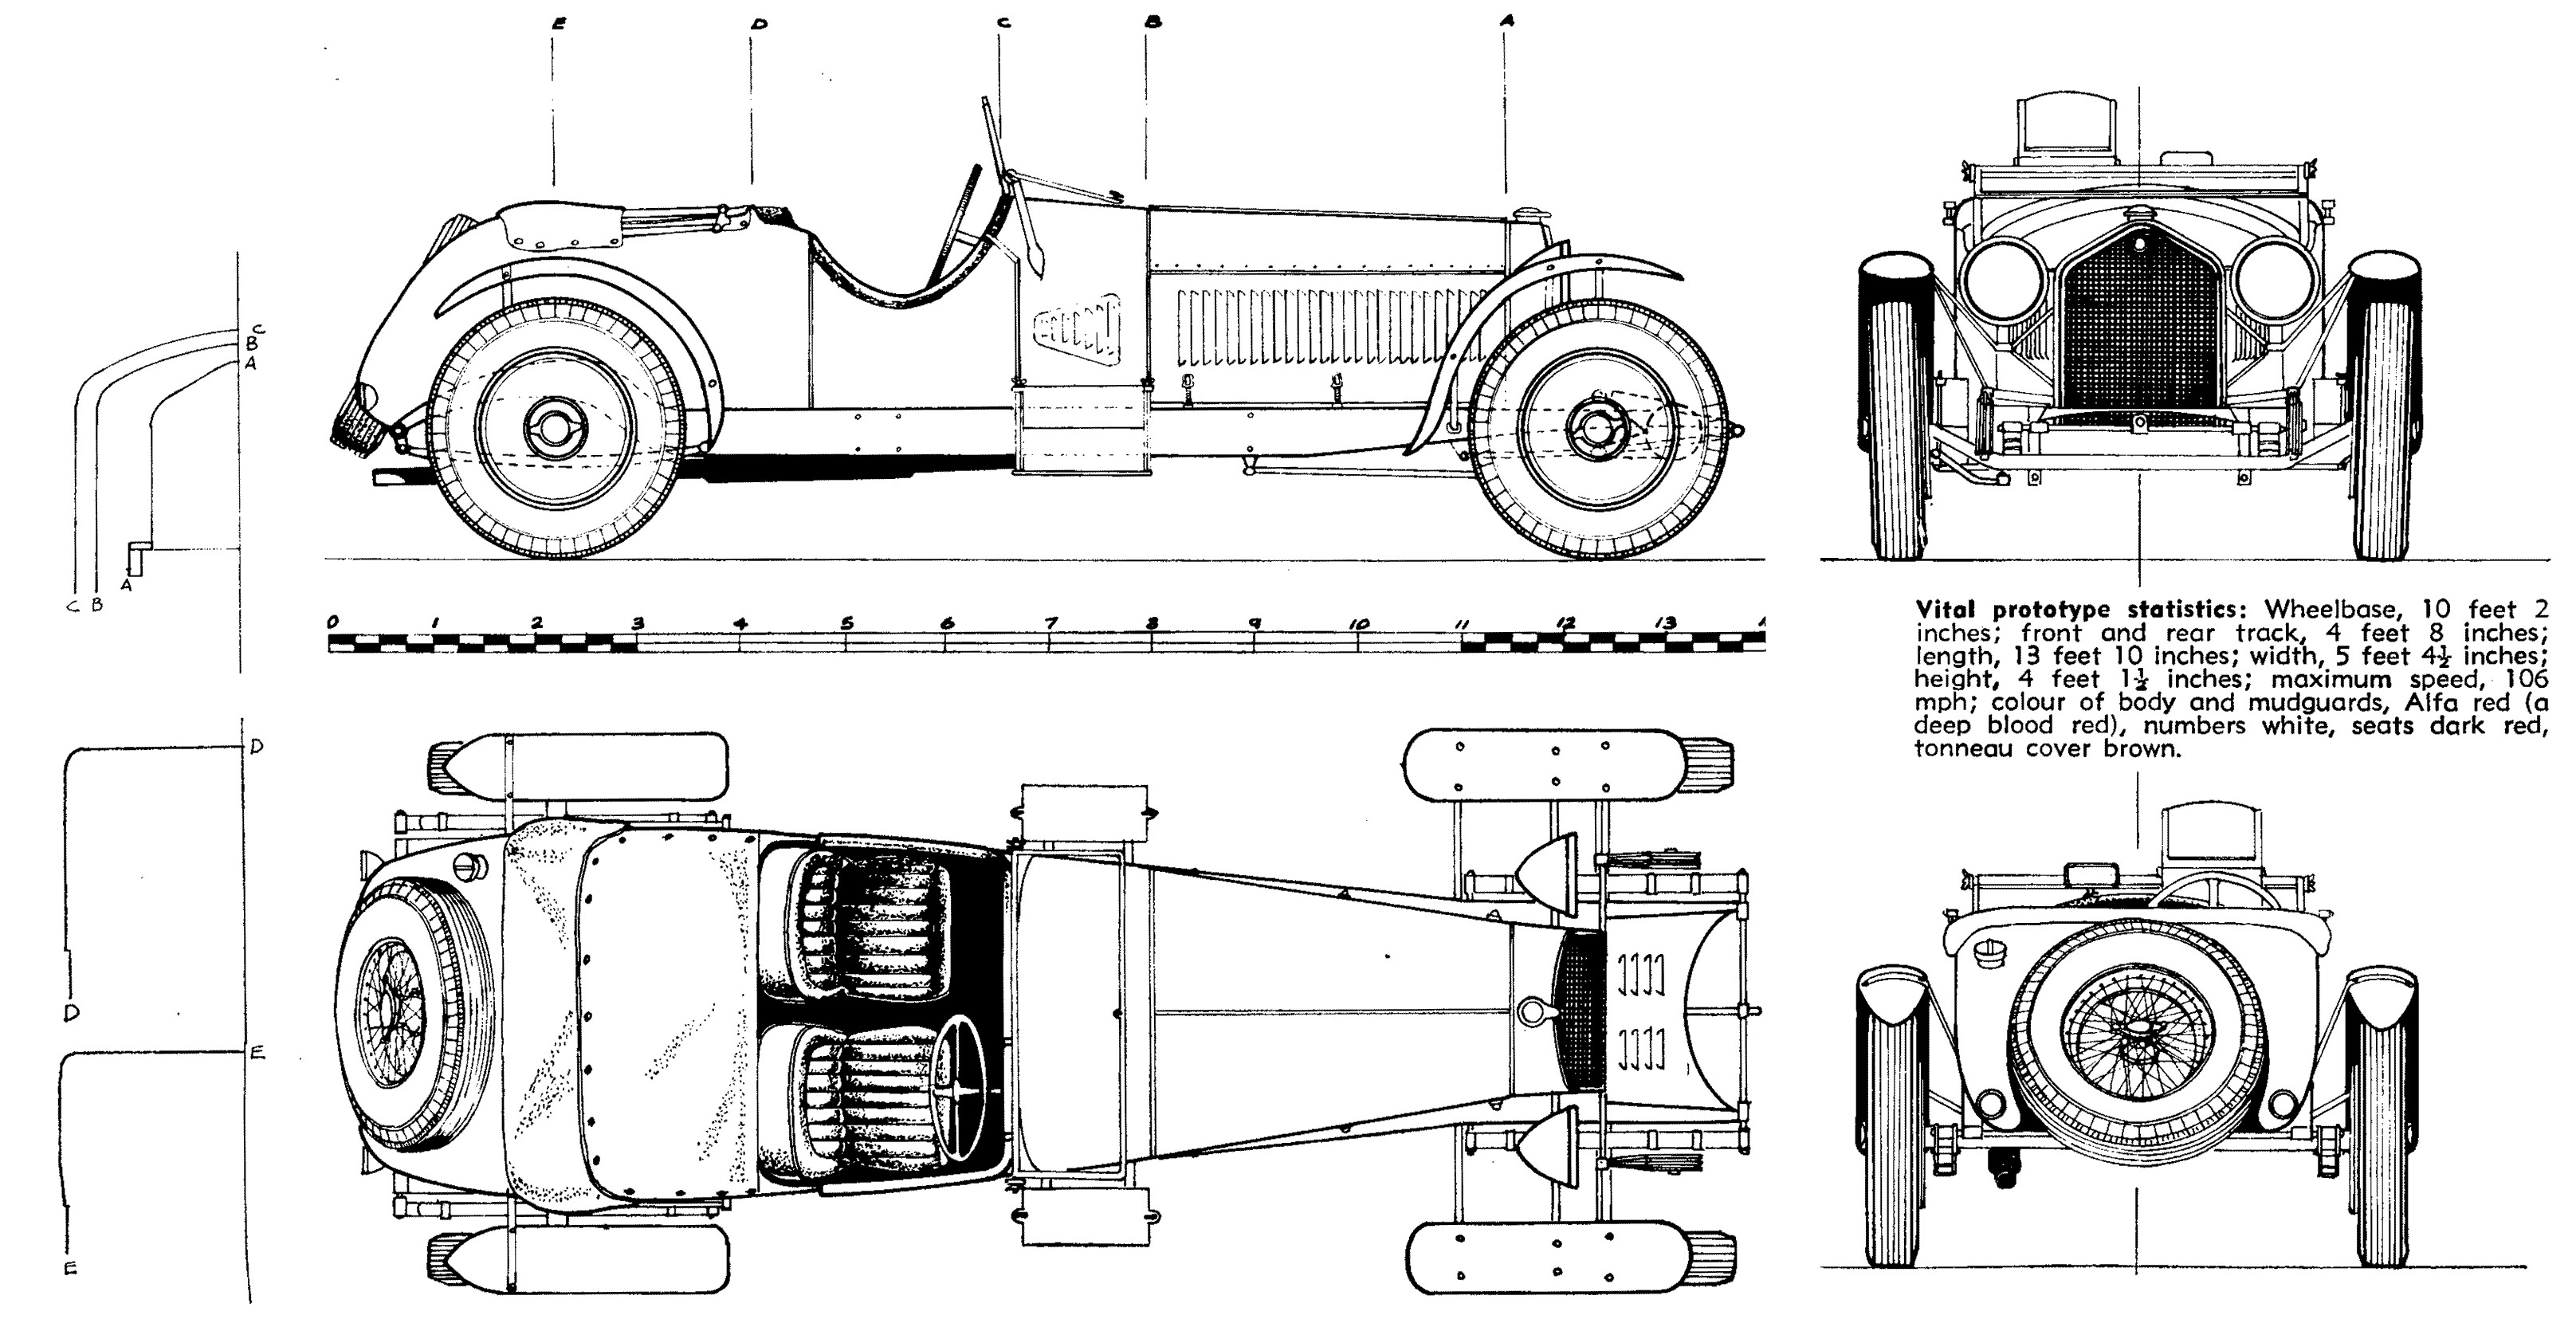 Car Engine Diagram Gif File0001lm31 3 2321 660 Ð¿Ð¸ÐºÑ Of Car Engine Diagram Gif